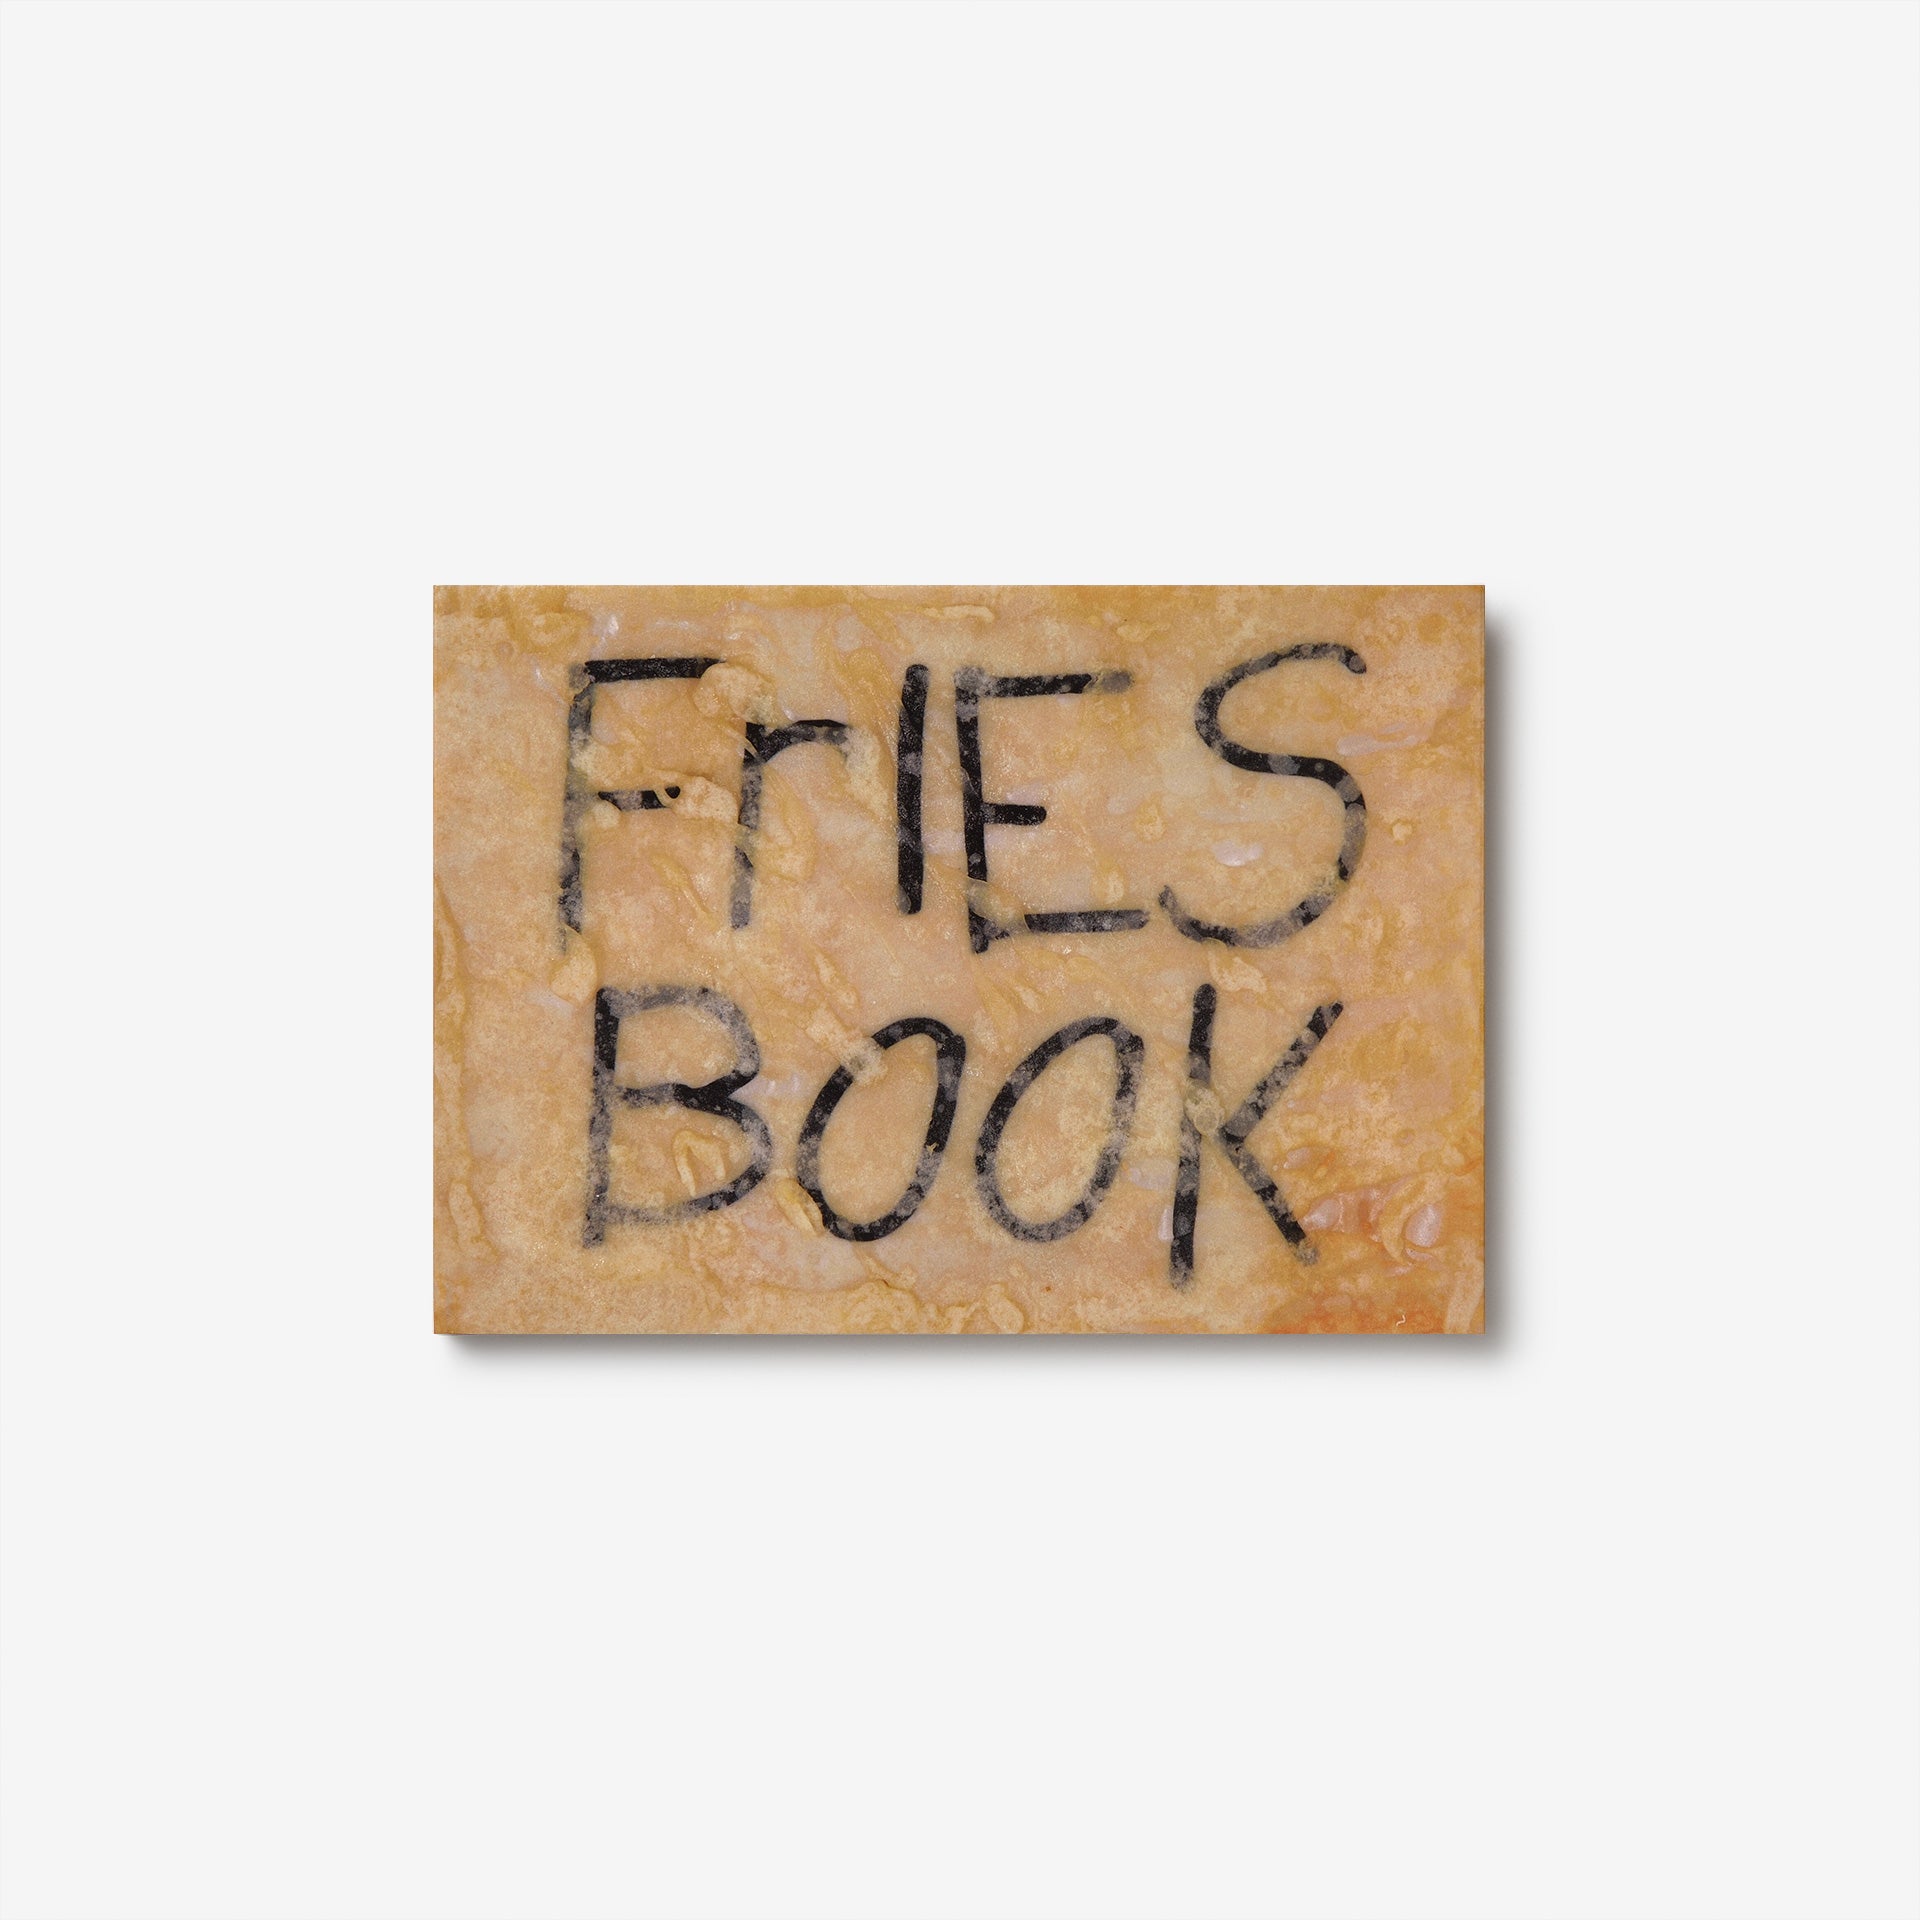 PZ Opassuksatit: Fries Book